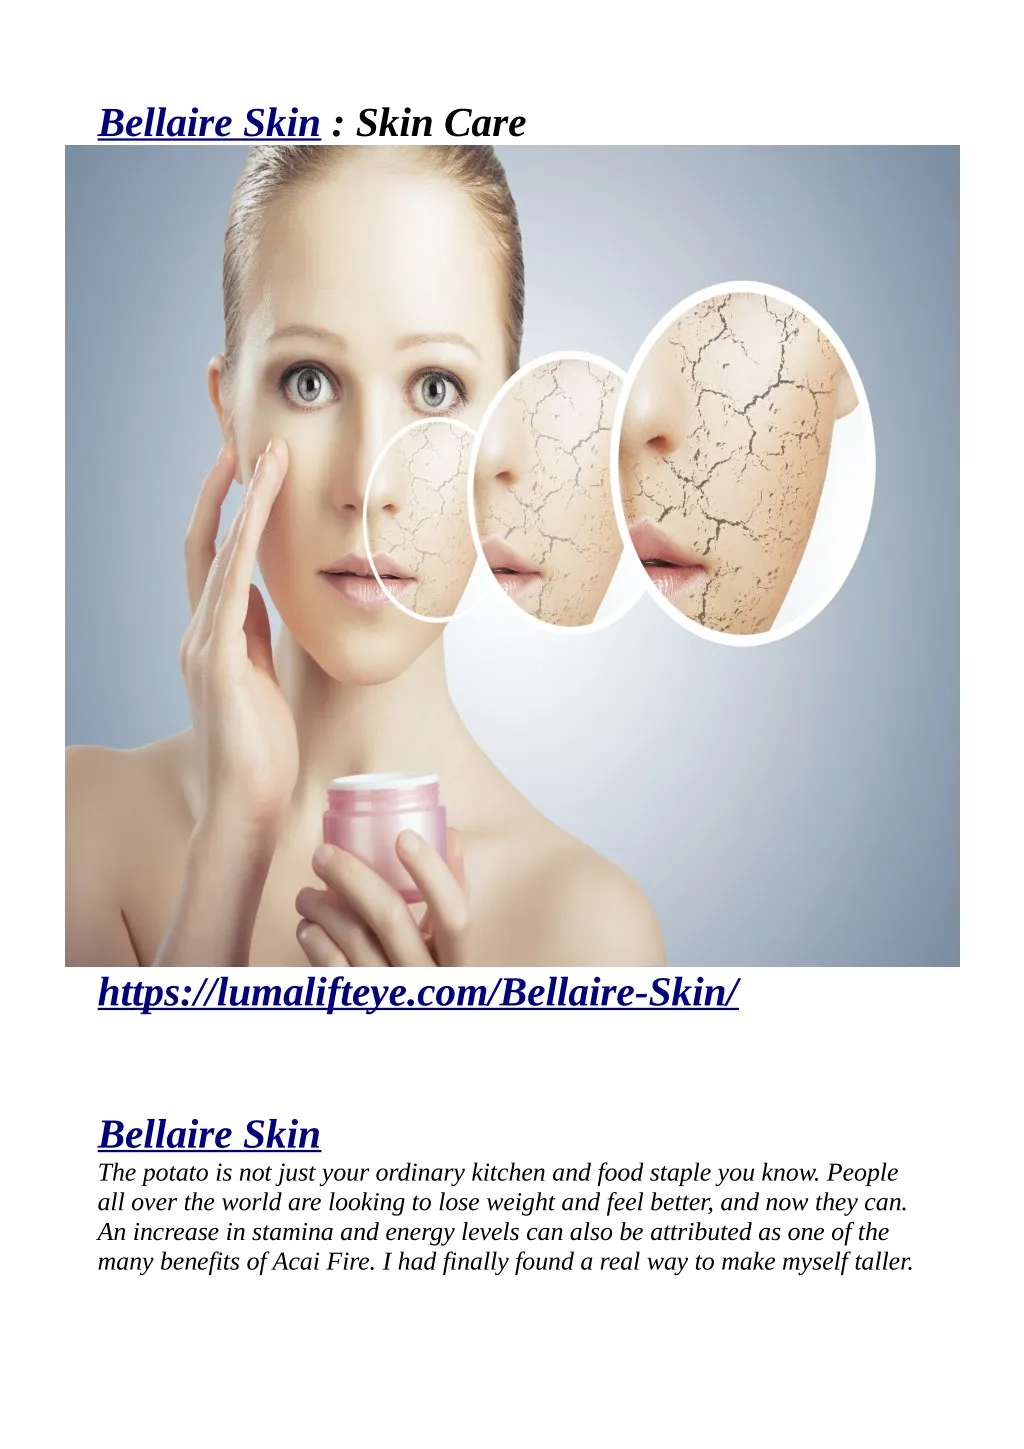 bellaire skin skin care